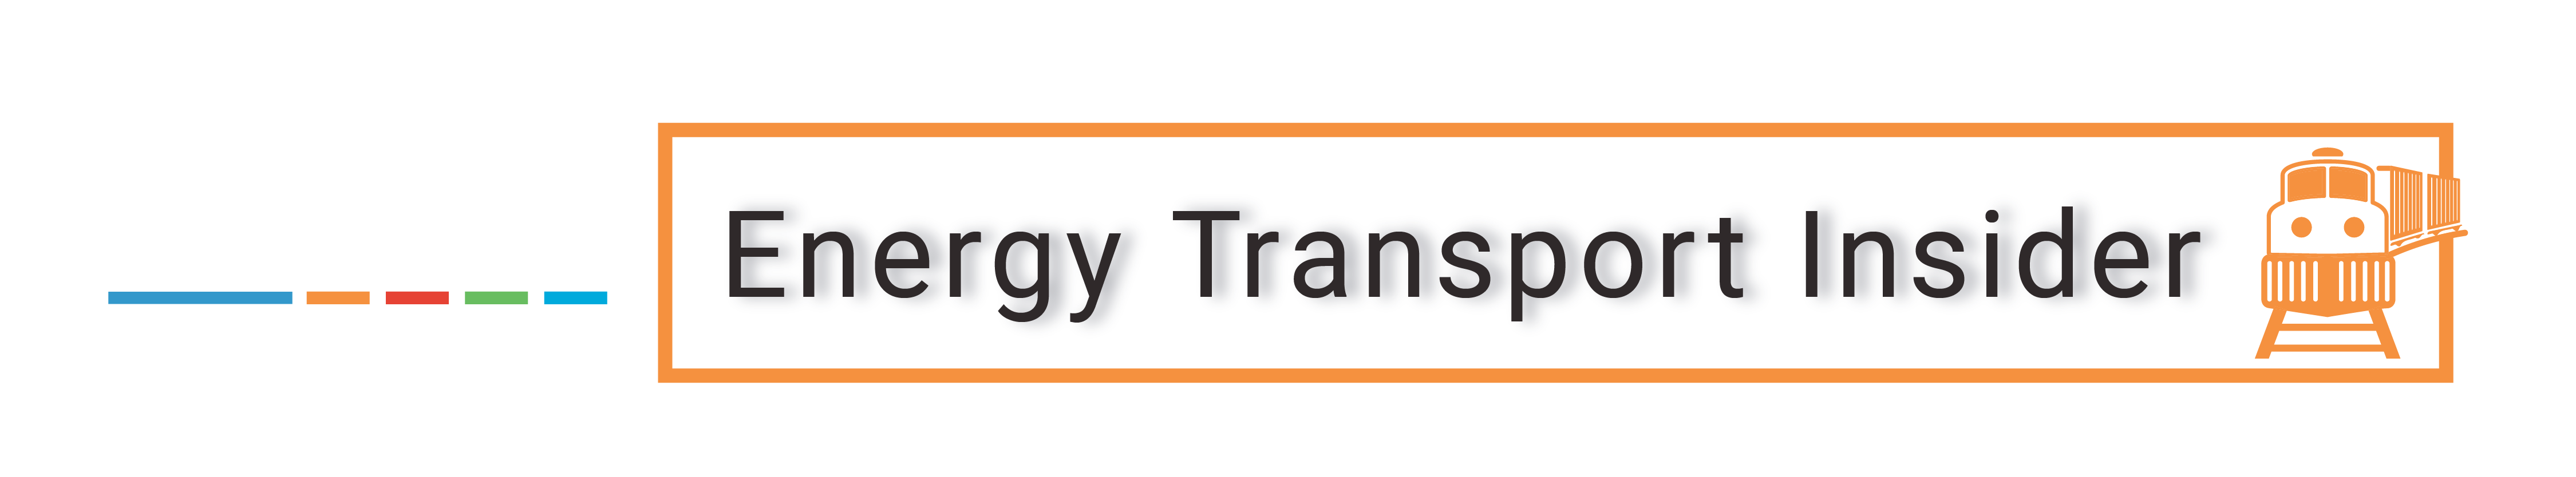 Energy Transport Insider - FTR